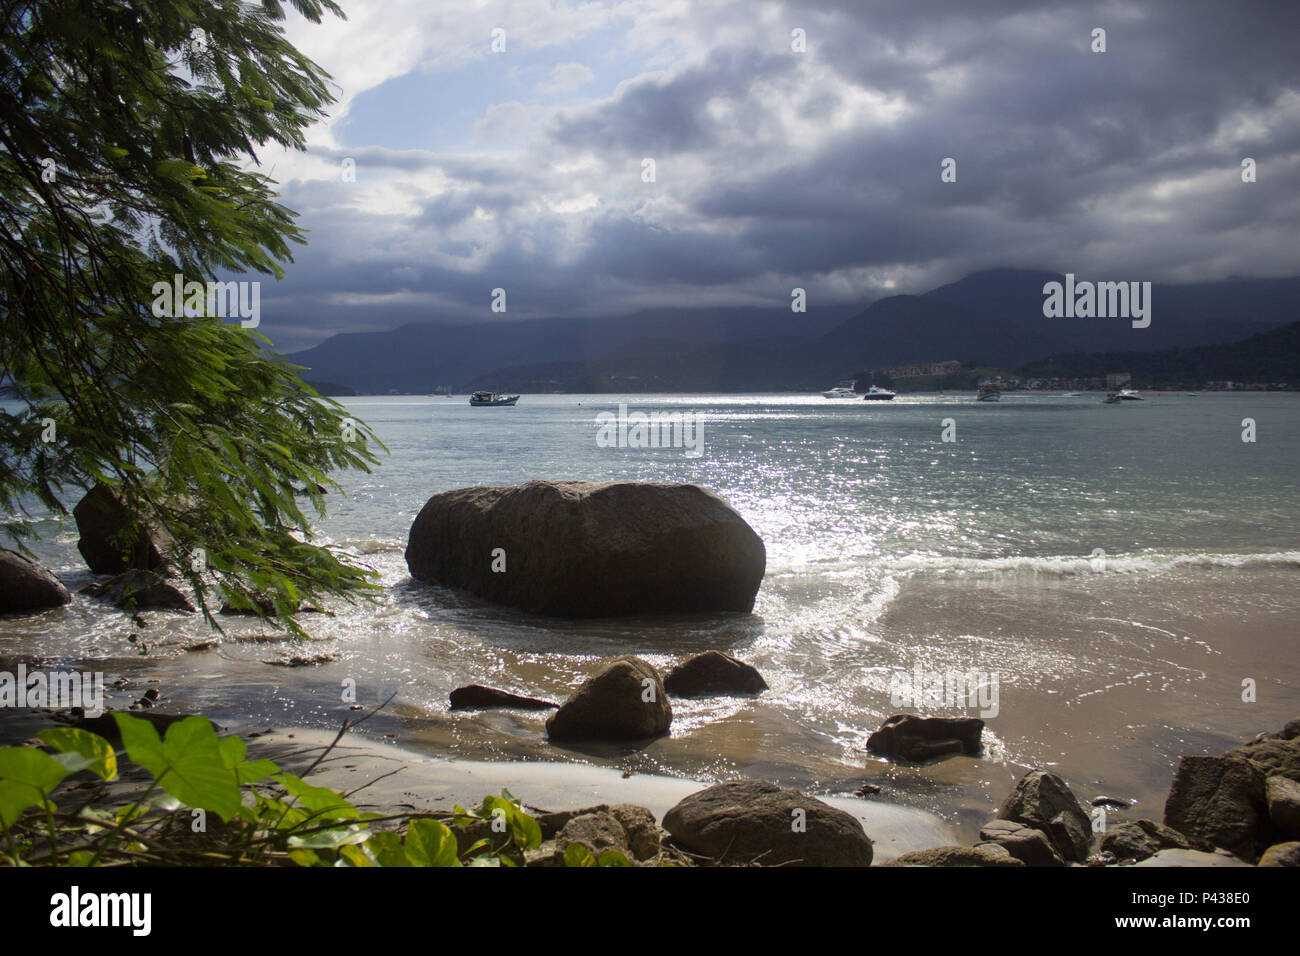 Rochas e pedras em praia ensolarada com barcos navegando no mar ao longe em Ubatuba, SP, Brasil. Stock Photo